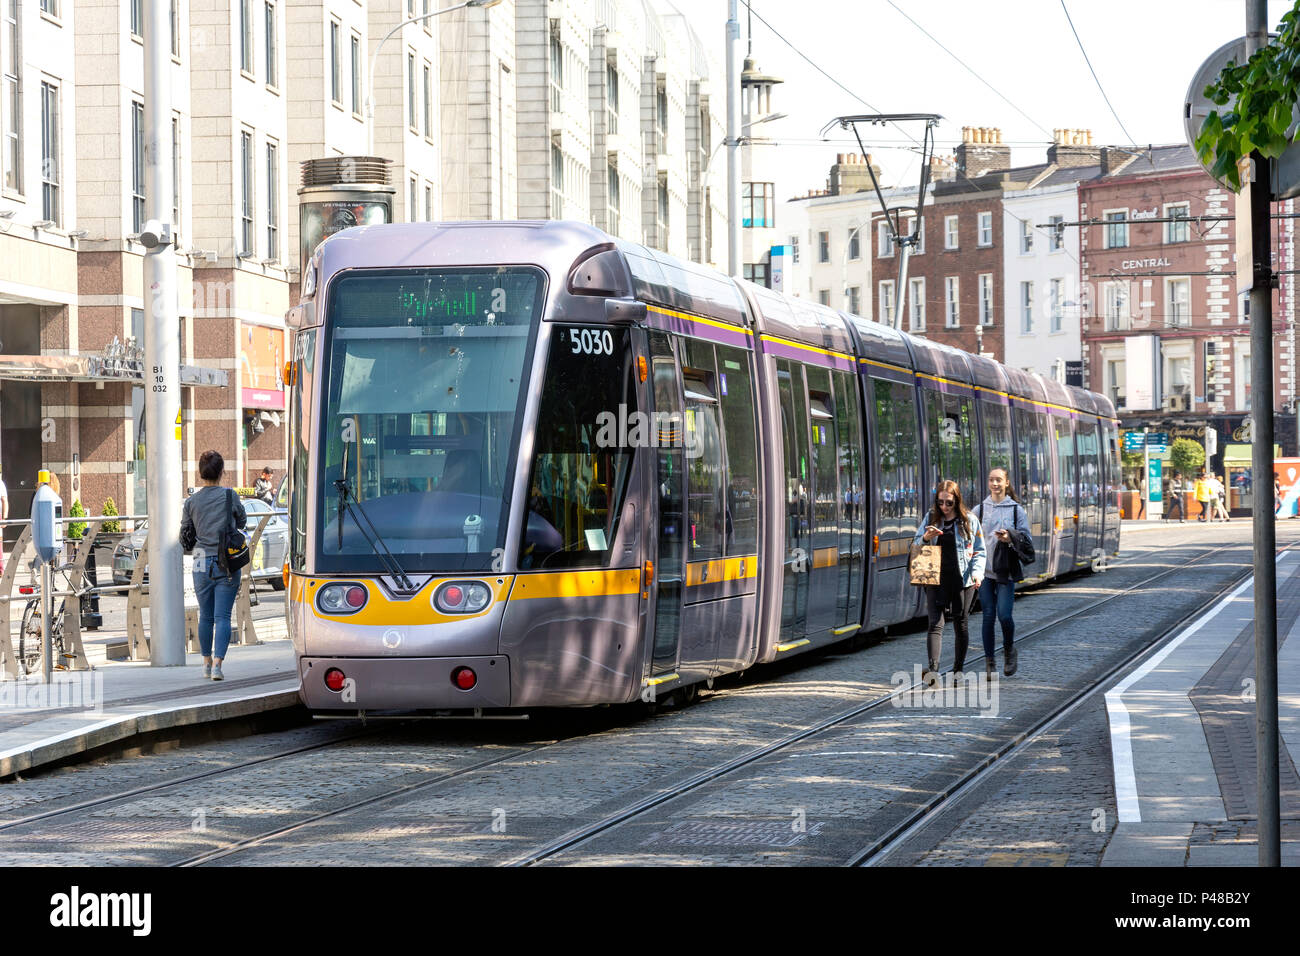 Sistema di trasporto Luas tram/ferrovia leggera, St Stephen's Green, Dublino, Repubblica d'Irlanda Foto Stock